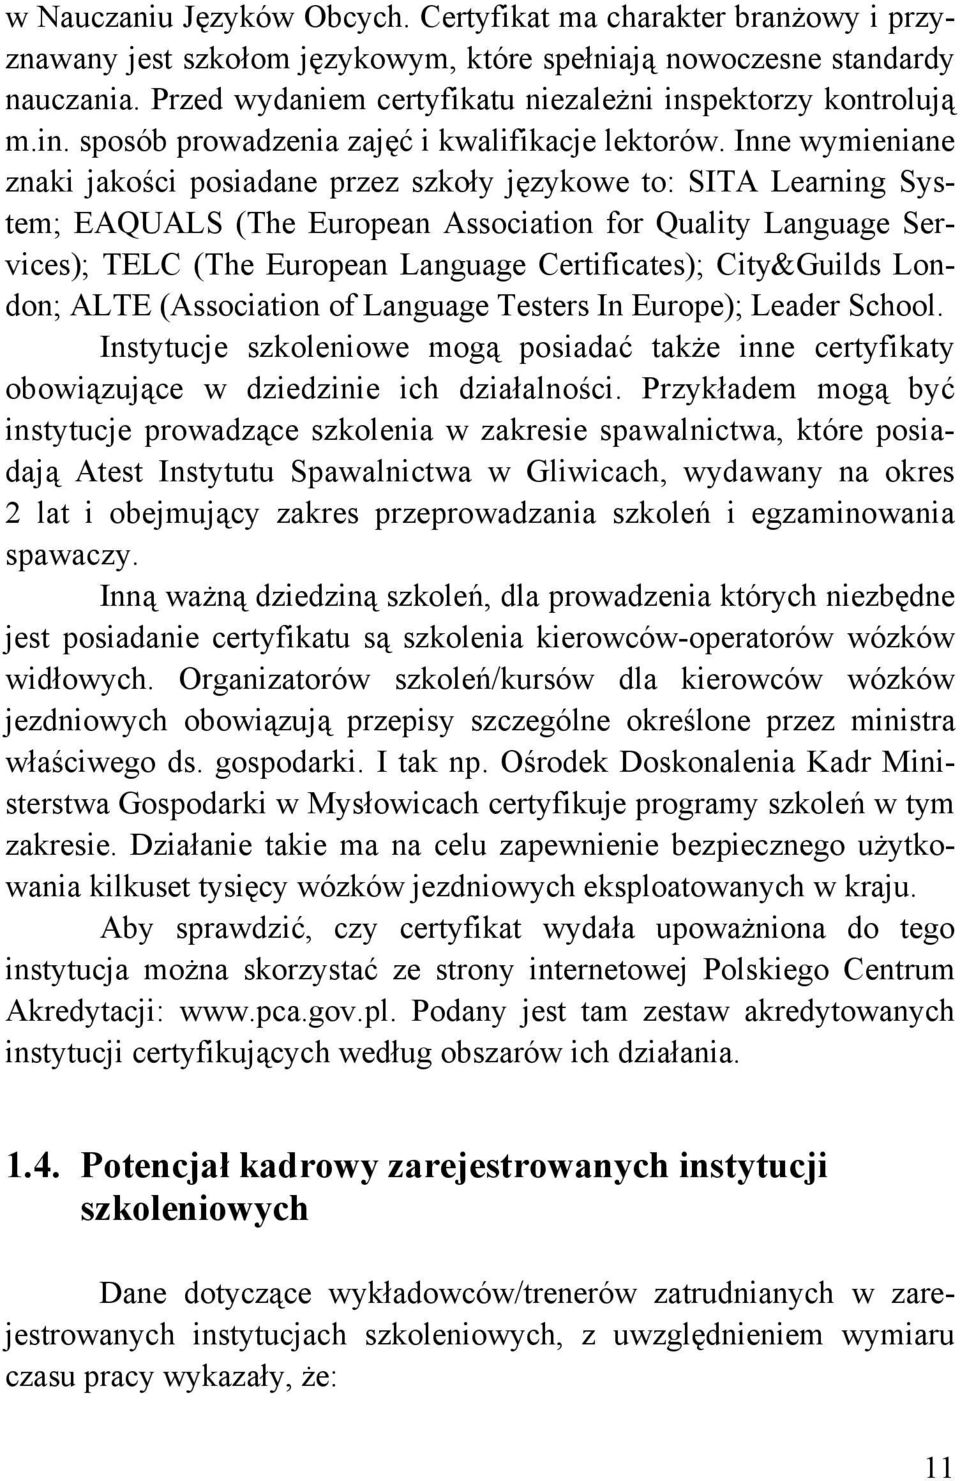 Inne wymieniane znaki jakości posiadane przez szkoły językowe to: SITA Learning System; EAQUALS (The European Association for Quality Language Services); TELC (The European Language Certificates);